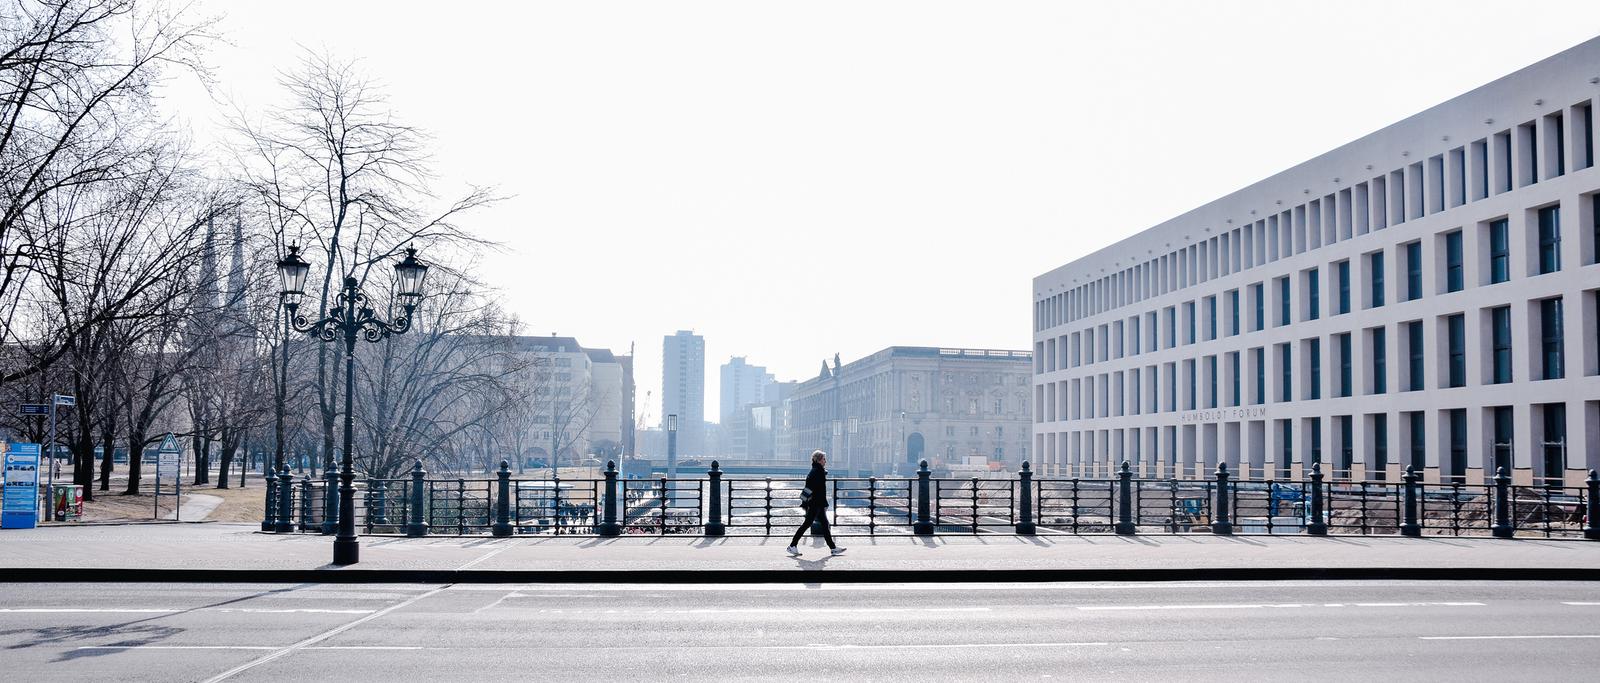 Walking in Berlin